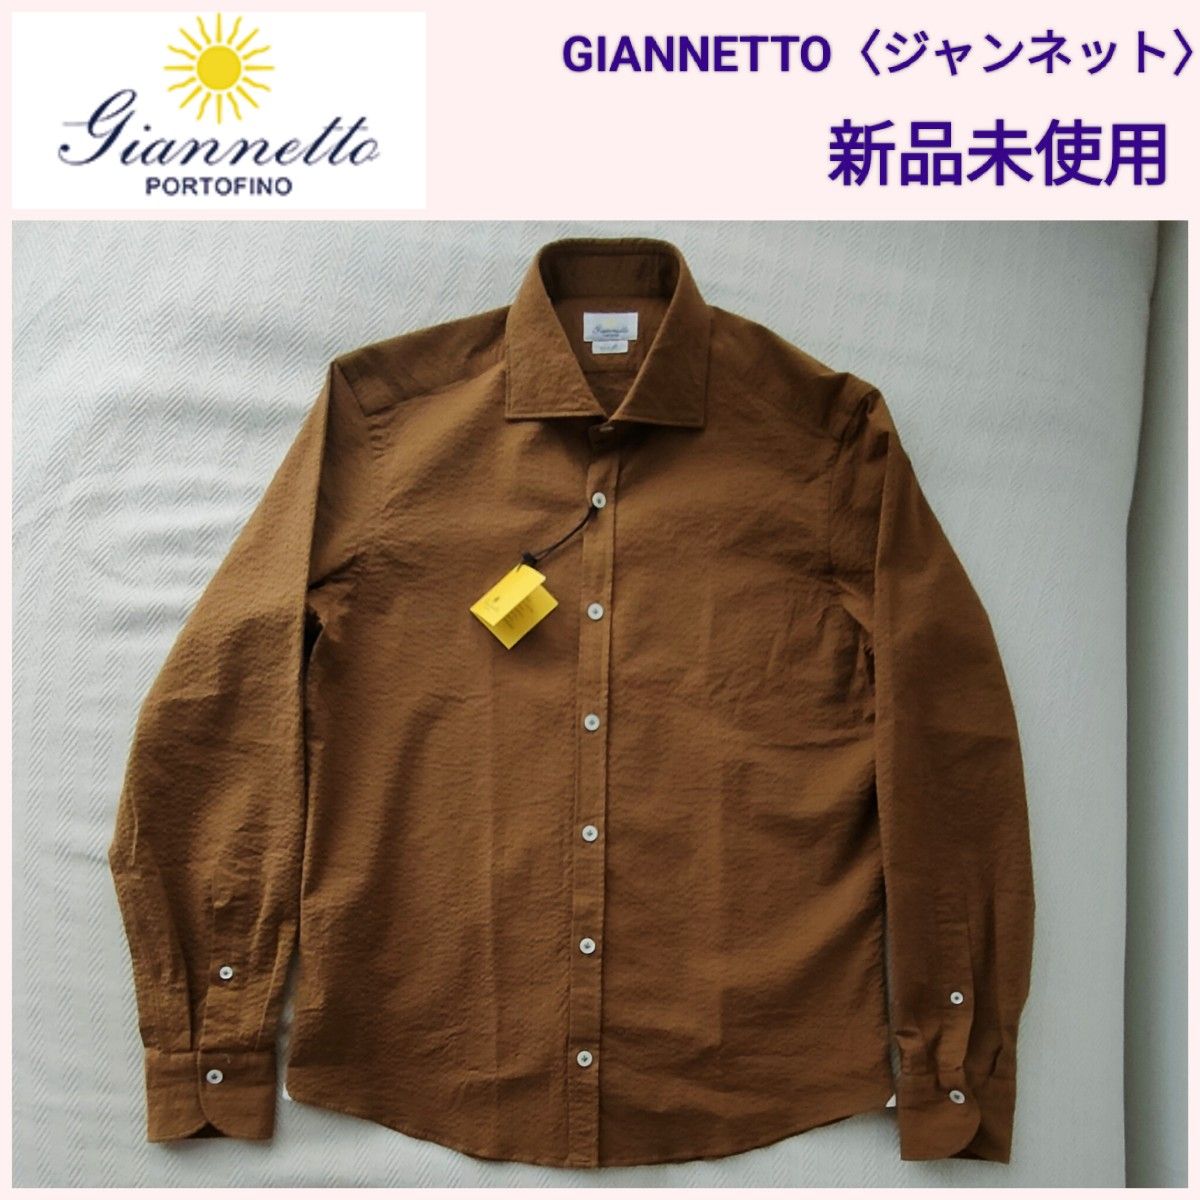 【新品未使用】Giannetto〈ジャンネット〉メンズシャツ イタリア製 VINCI FIT  39（M）29,700円 ブラウン